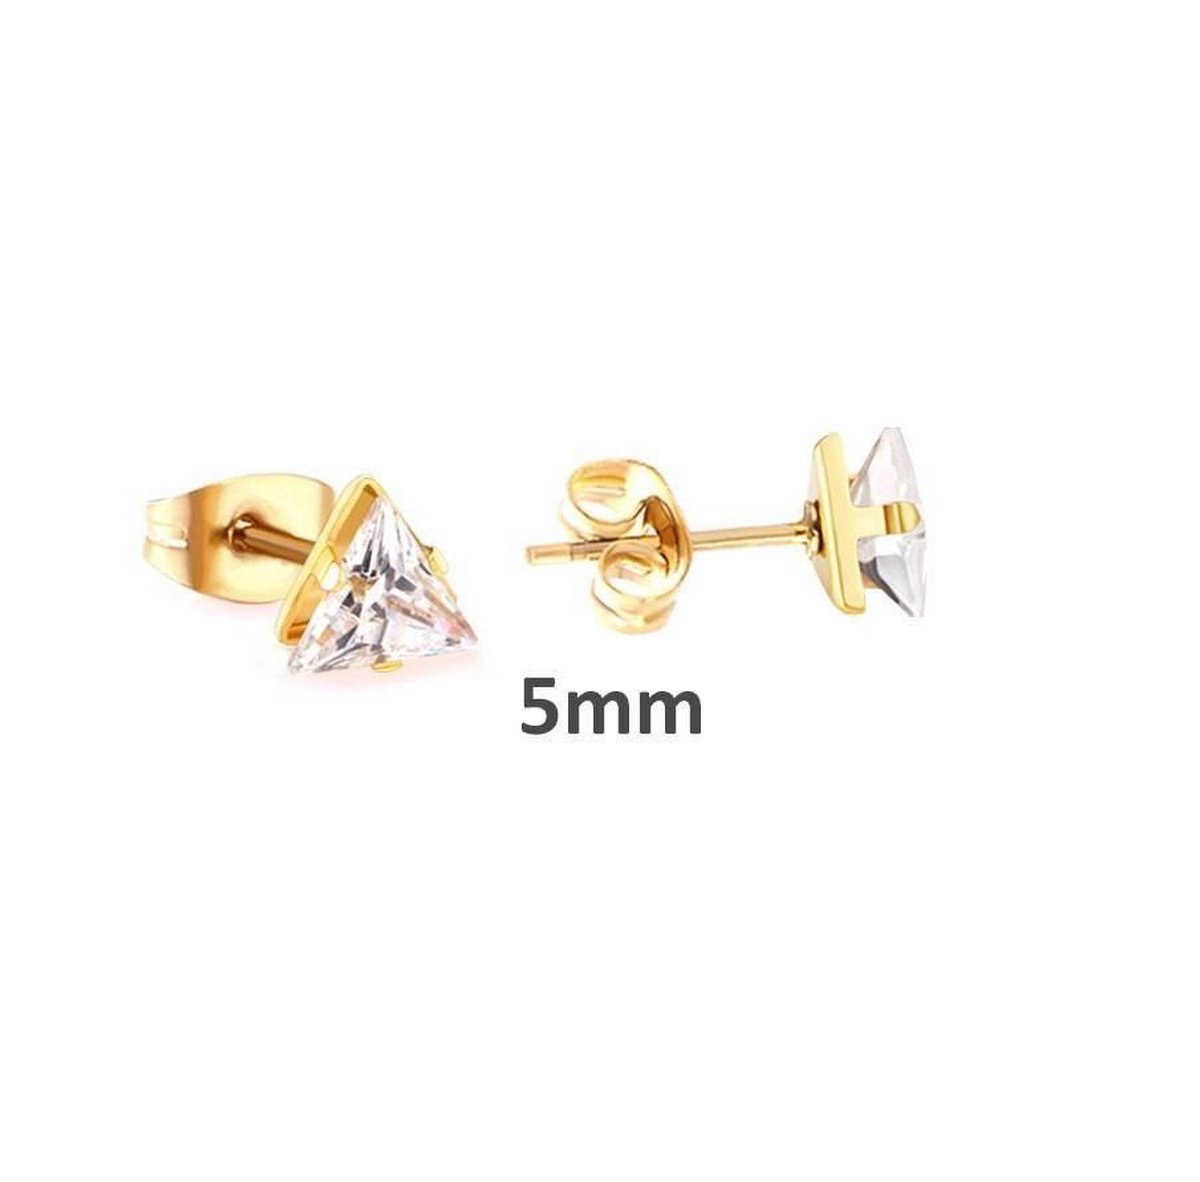 Aramat jewels ® - Zweerknopjes- oorbellen-driehoek-zirkonia-chirurgisch staal-goudkleurig-5mm